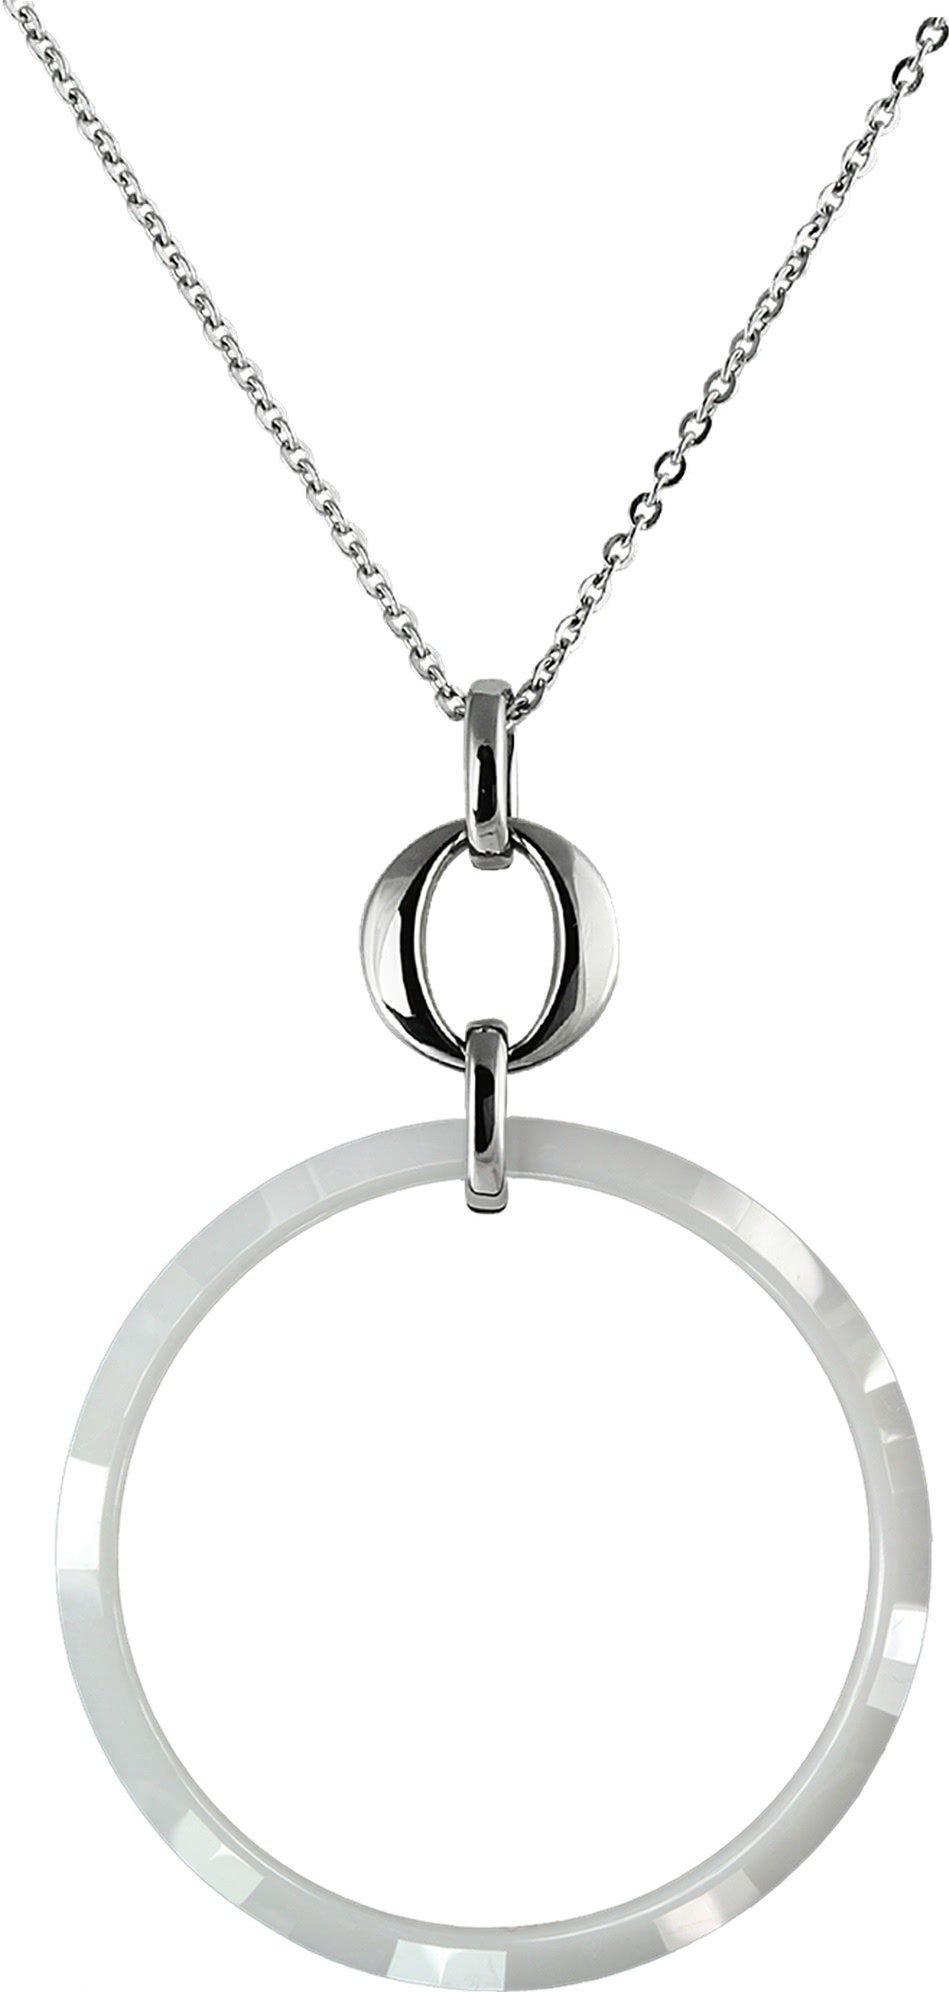 Amello Edelstahlkette Amello Circle Halskette silber weiß (Halskette), Damen Halsketten (Circle) aus Edelstahl (Stainless Steel)